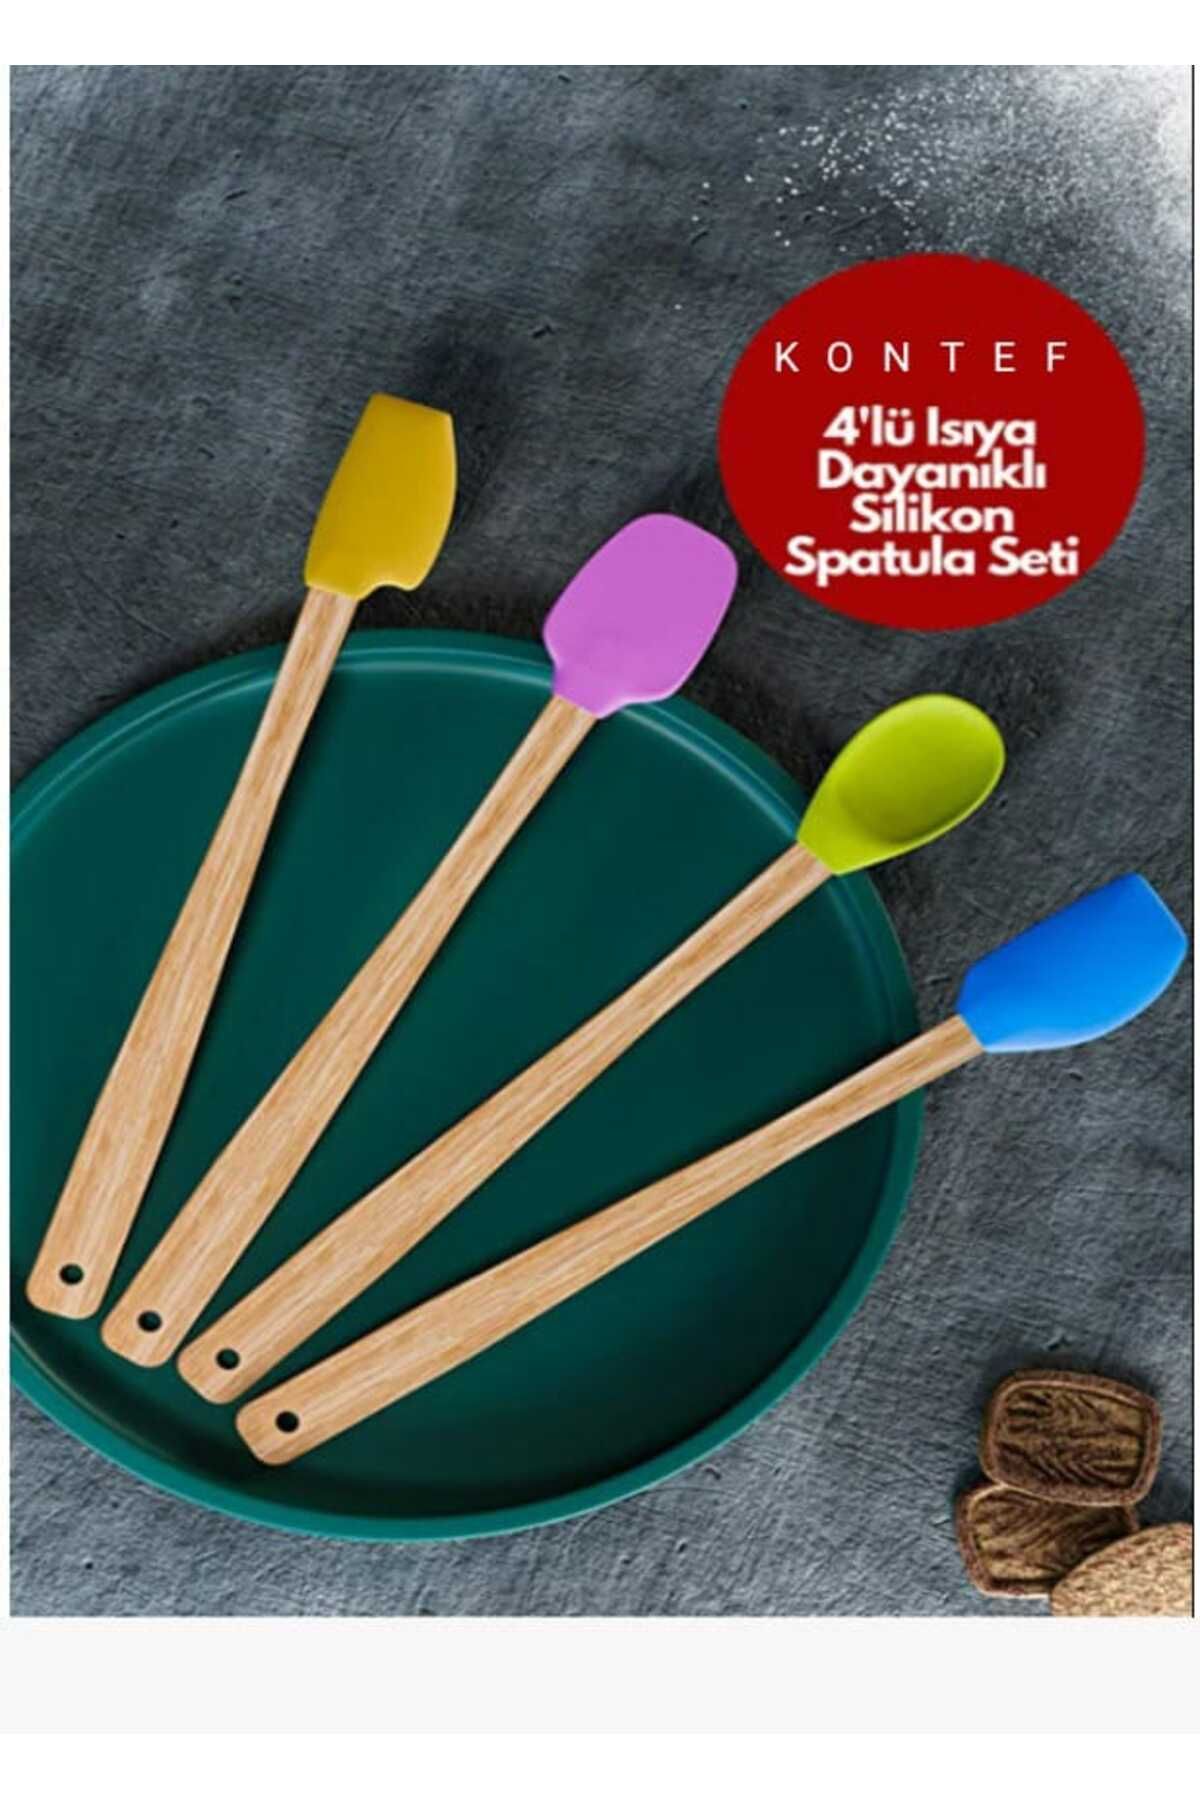 KONTEF 4'lü Isıya Dayanıklı Silikon Spatula Seti Silikon Mutfak Seti Renkli Kaşık Spatula Seti